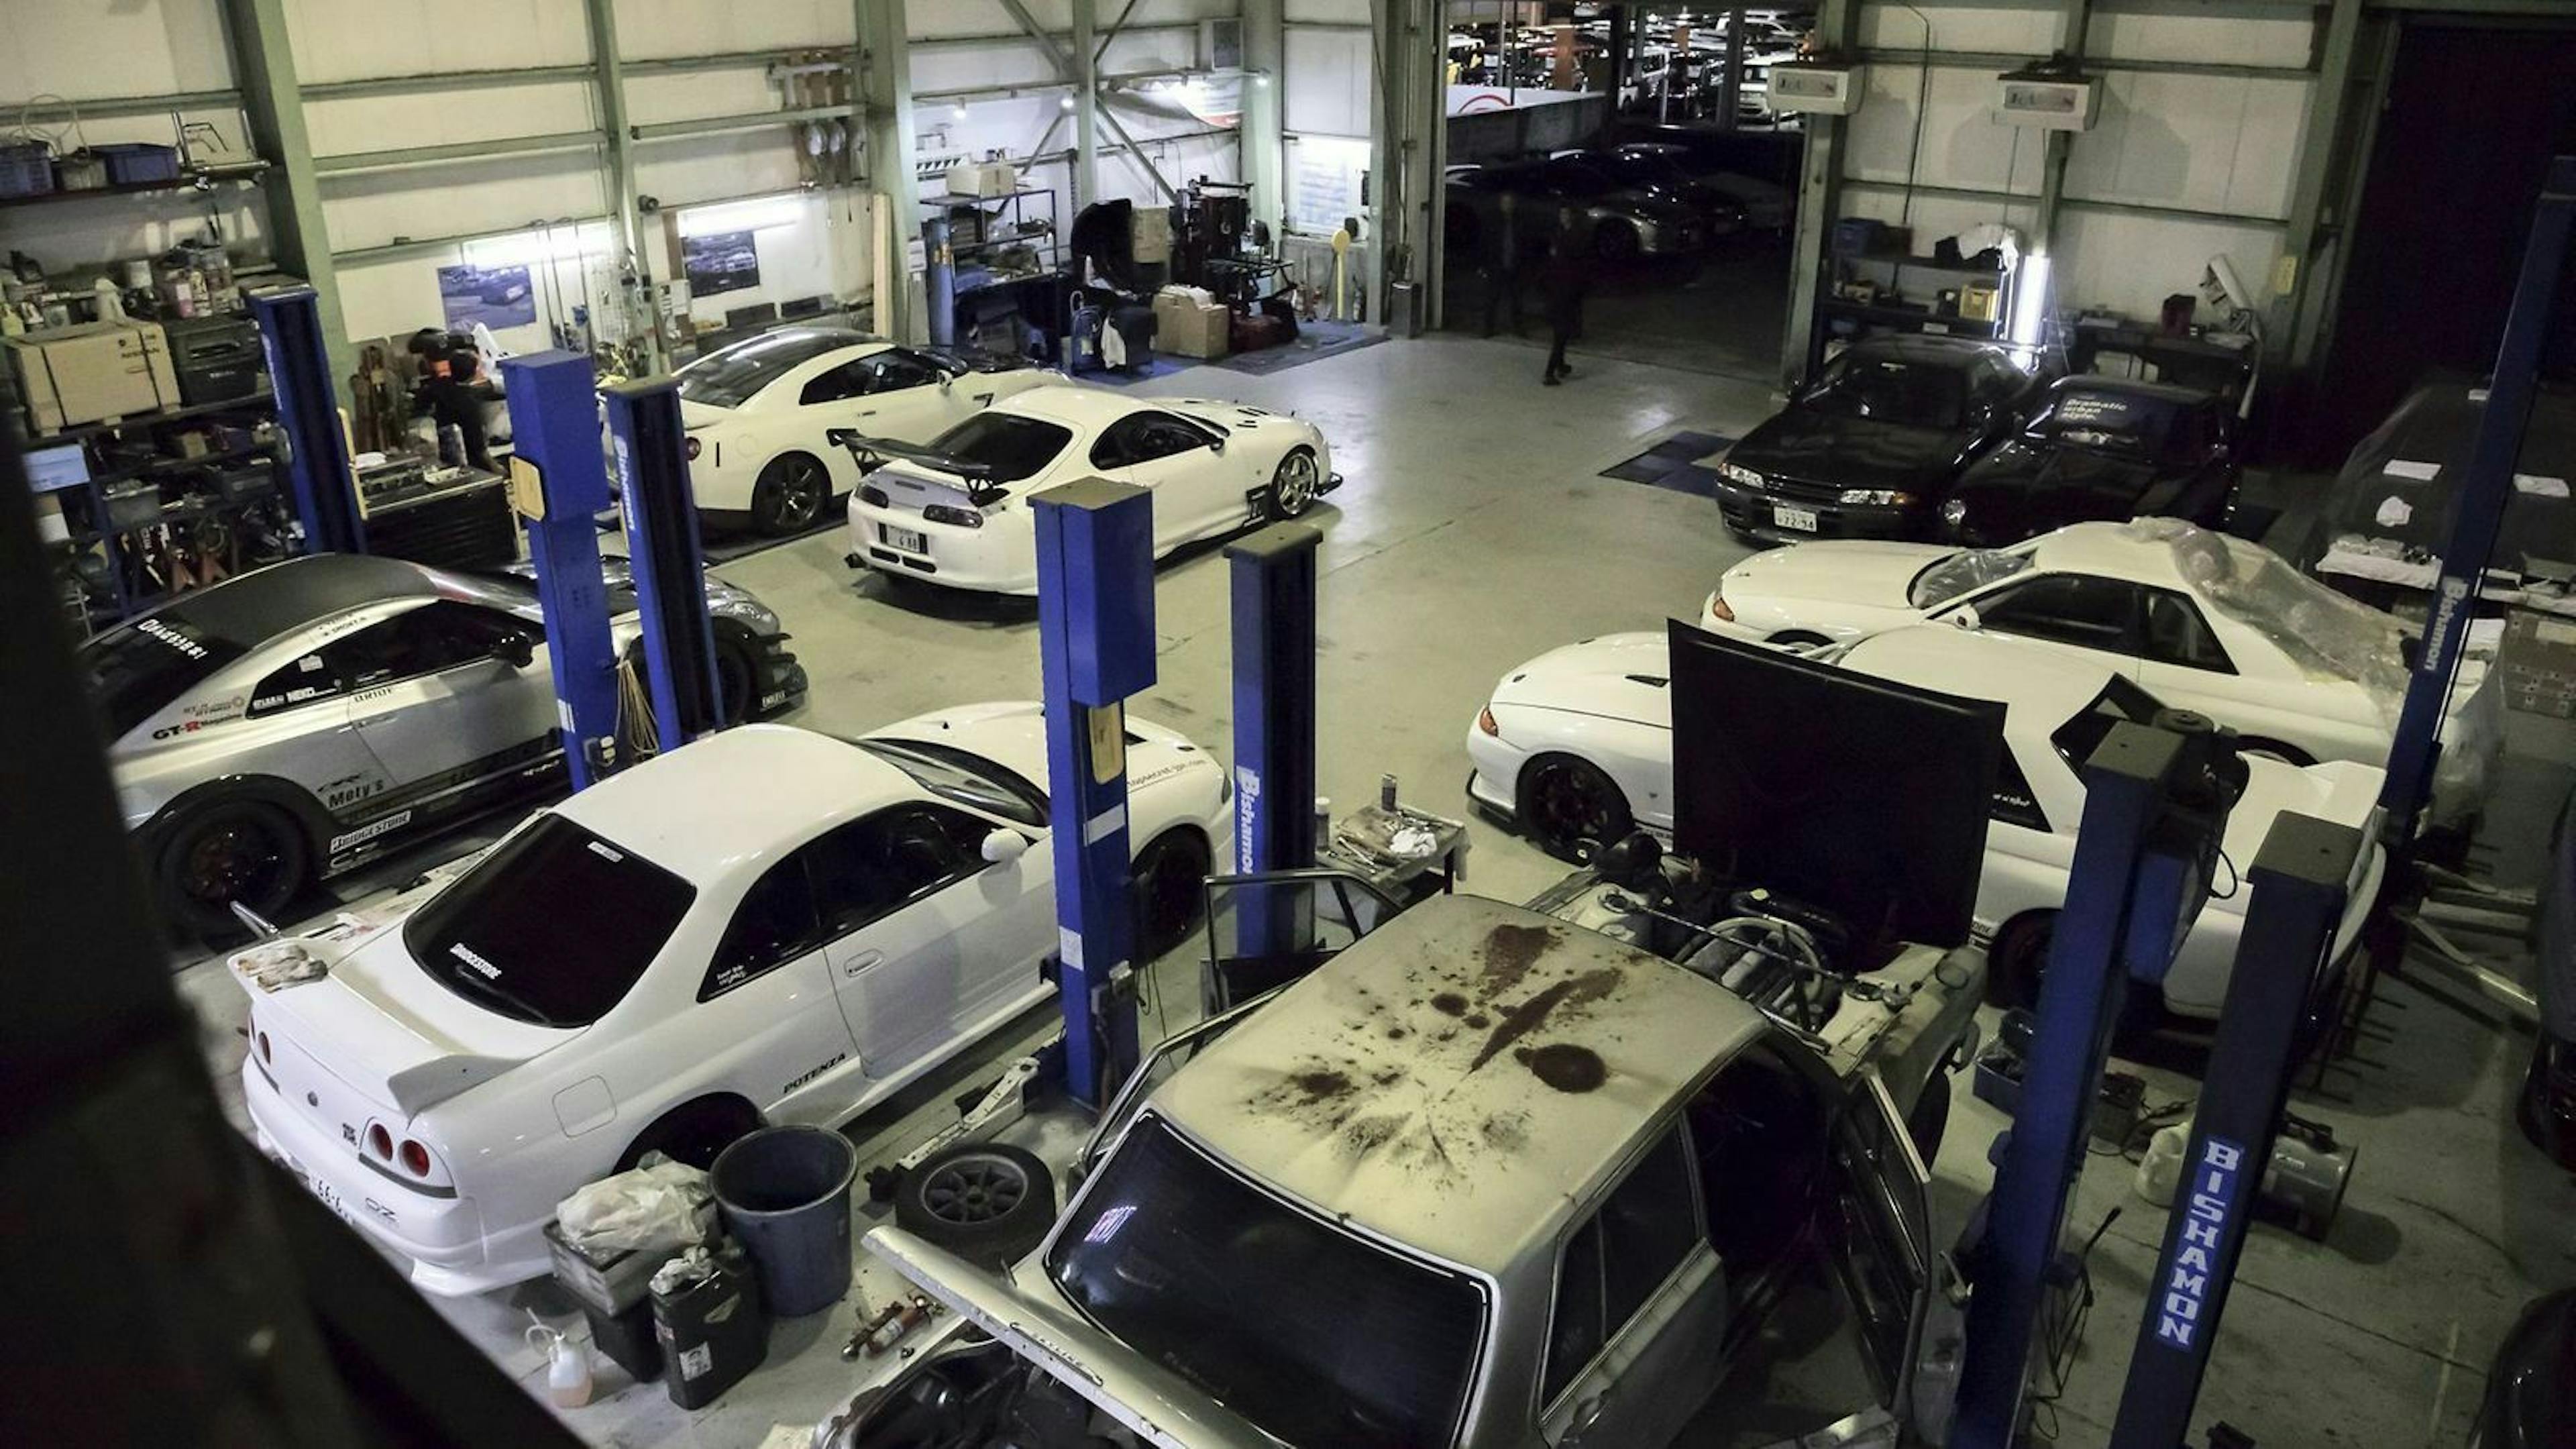 Zu sehen sind mehrere Nissan Skyline Fahrzeuge in der Werkstatt von Kazuhiko Nagata